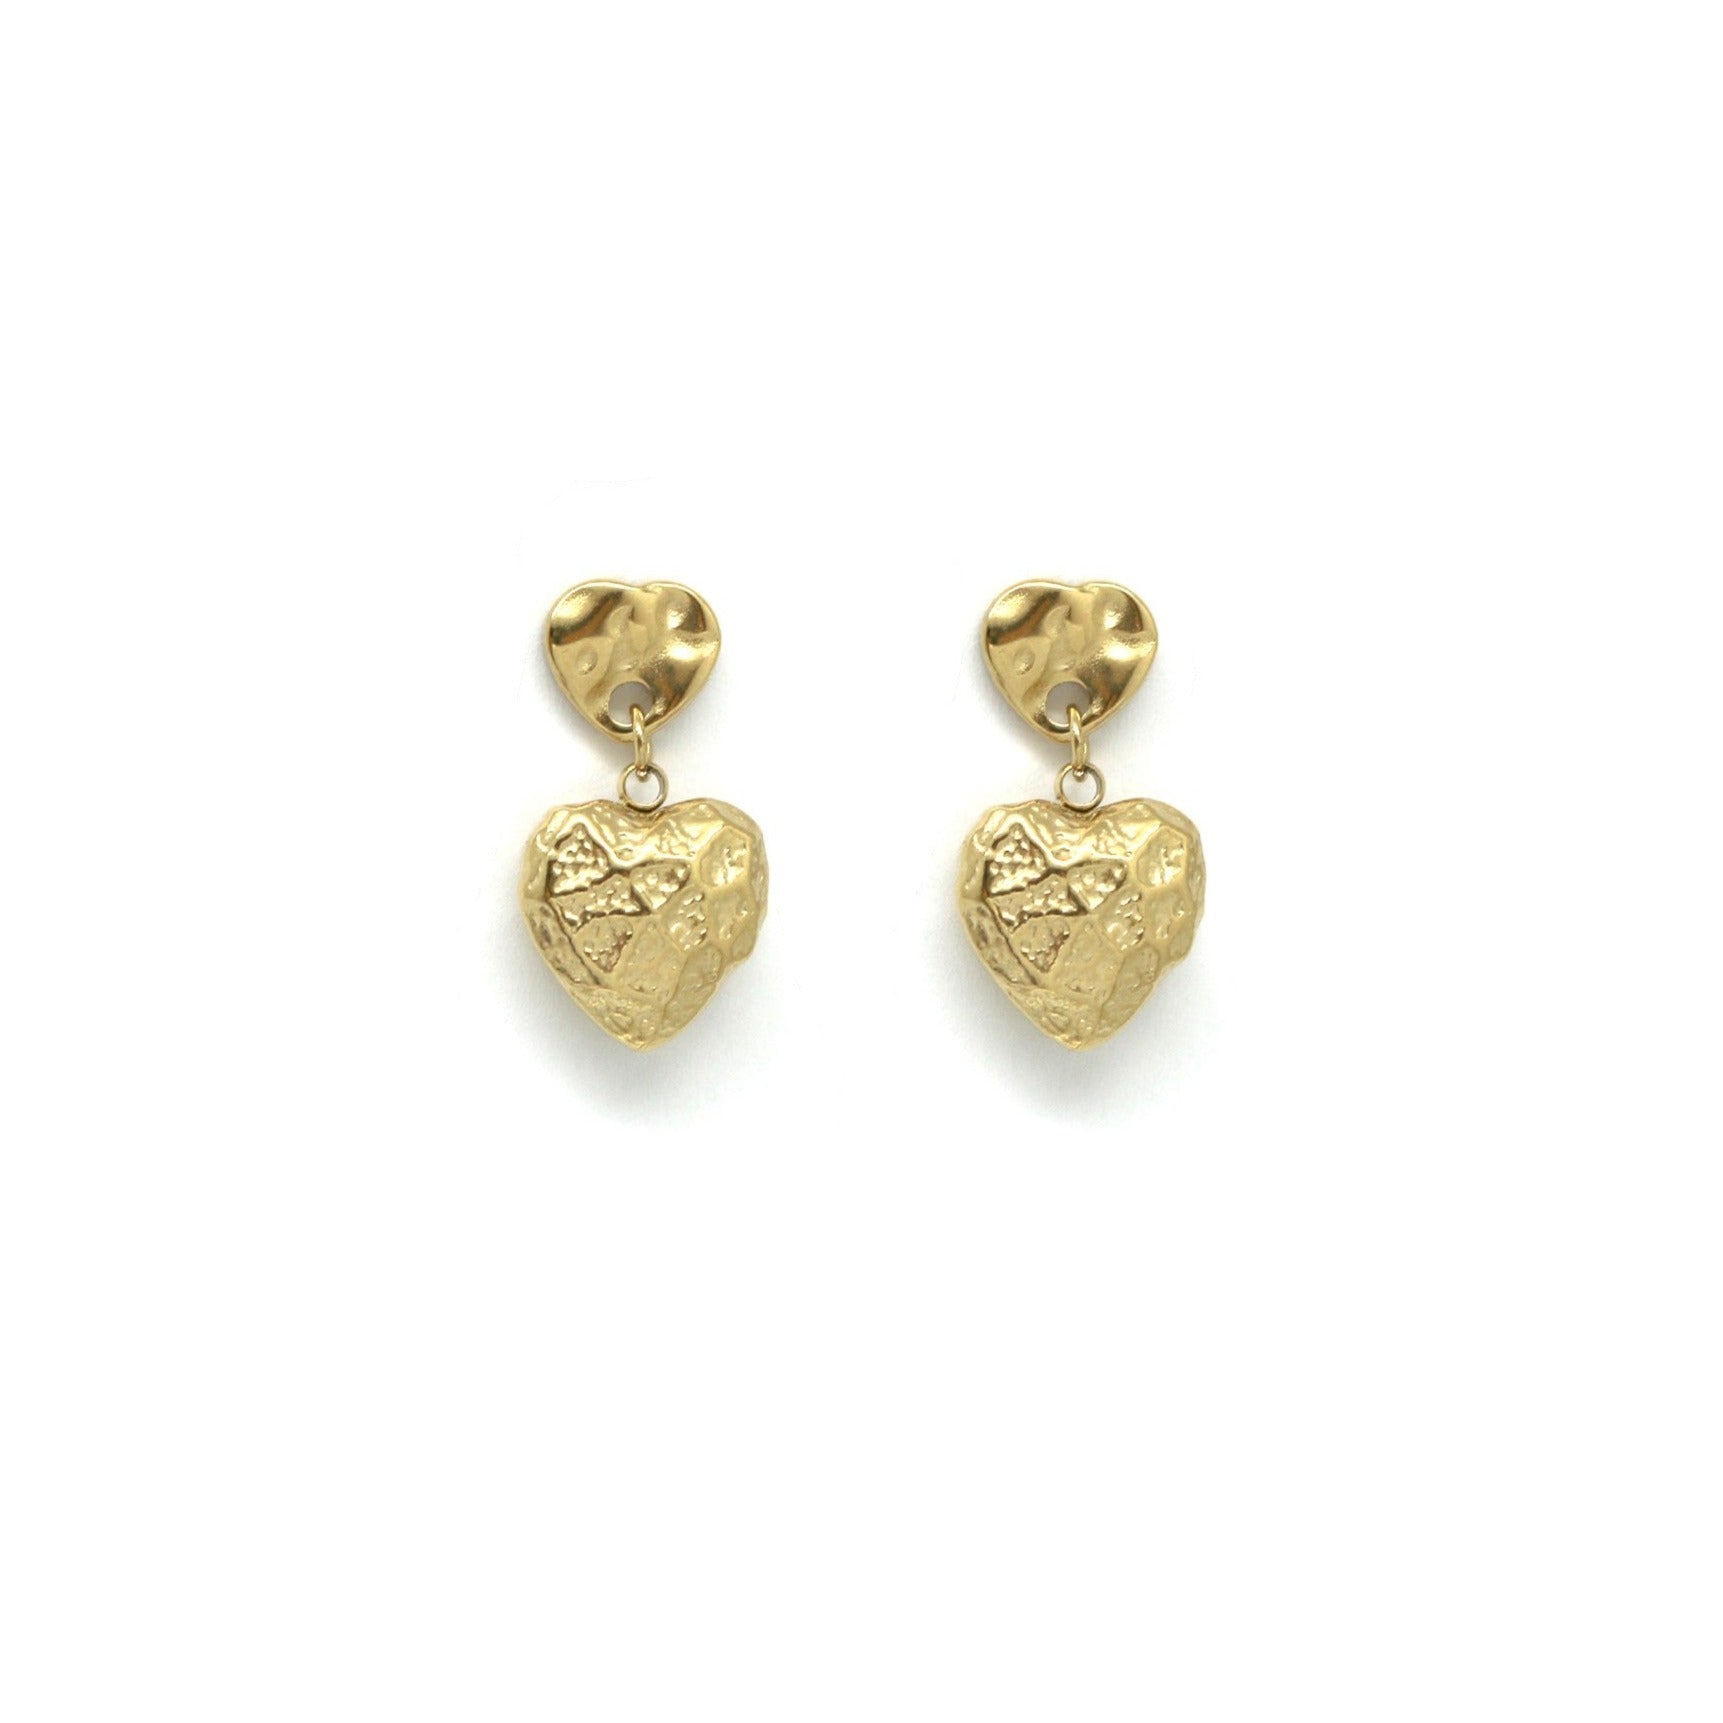 Solid heart earrings